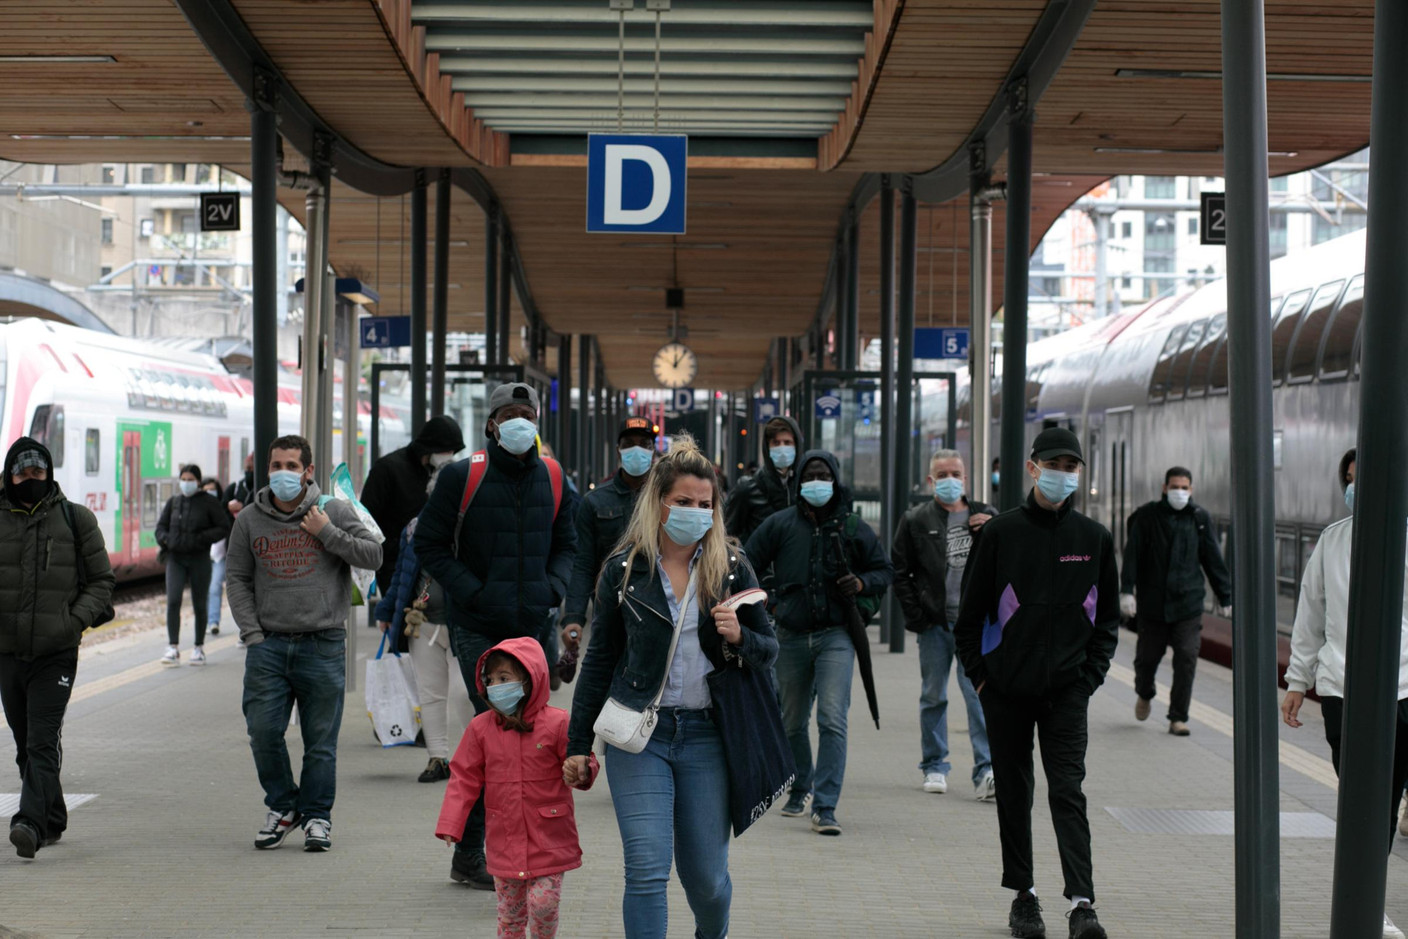 Le port du masque est obligatoire dans les trains, les bus, les salles d'attente et sur les quais. (Photo: Matic Zorman / Maison Moderne)